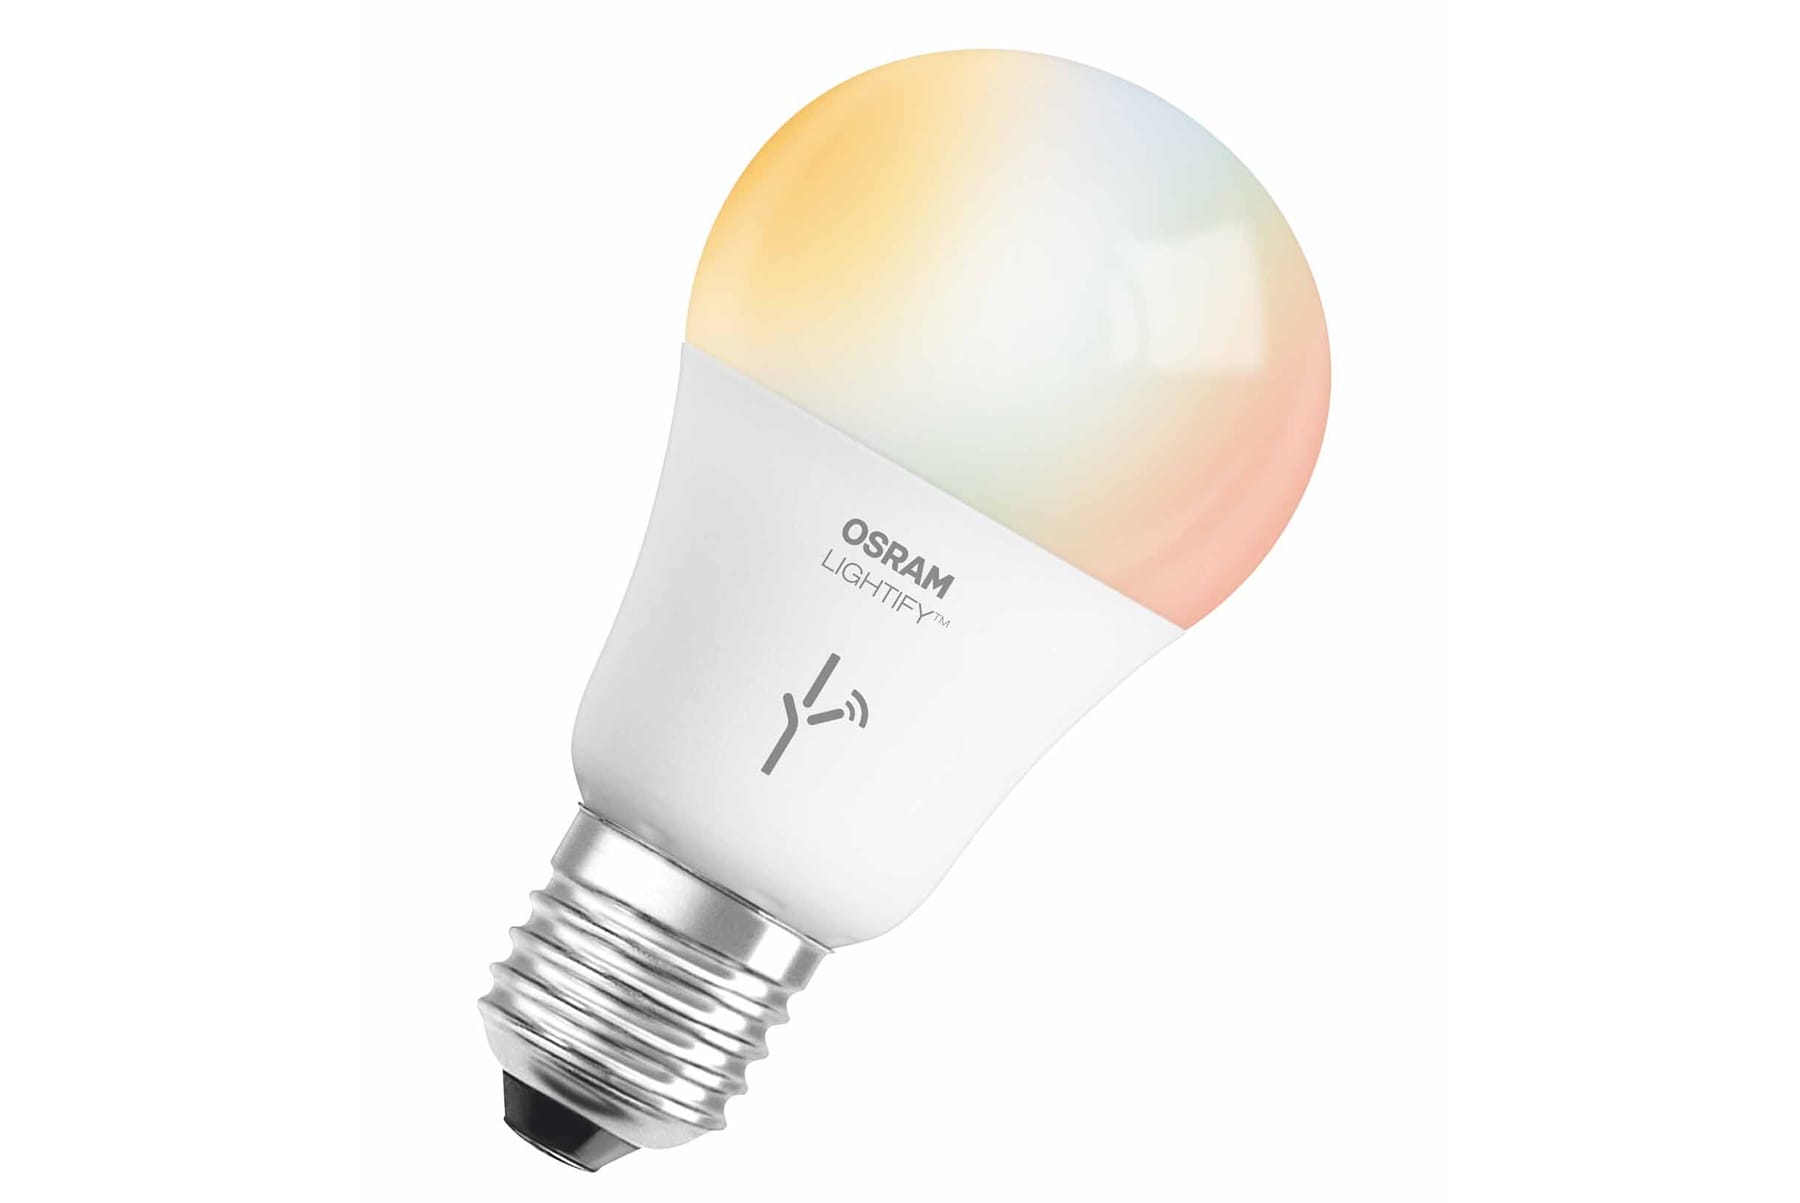 Die LED-Lampen mit klassischer Glühbirnen-Fassung (E27) bieten beliebig einstellbares farbiges Licht und sorgen damit für Stimmung.